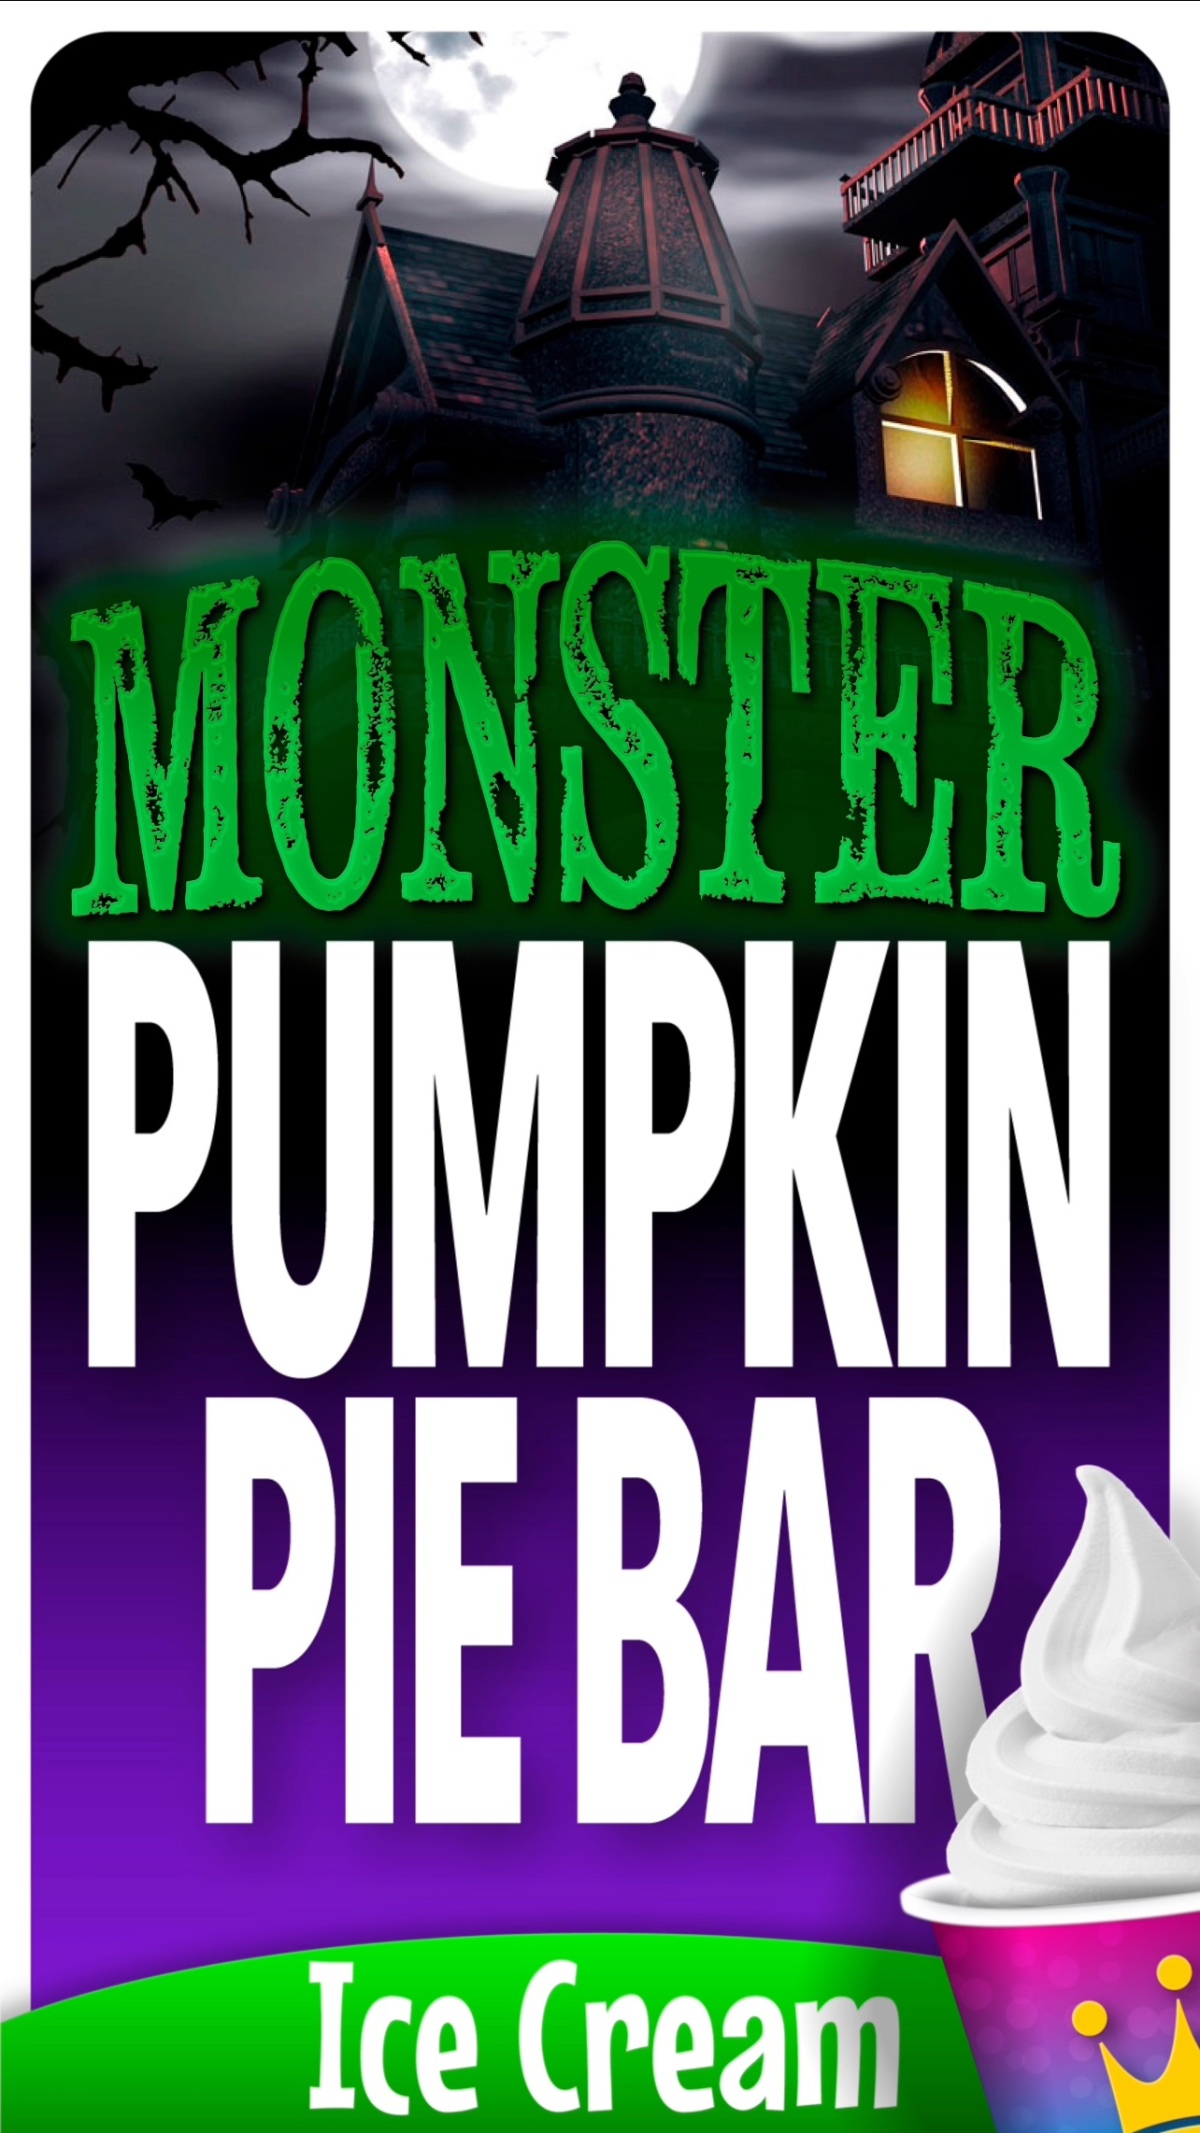 Cool King® “Monster Pumpkin Pie Bar” Ice Cream